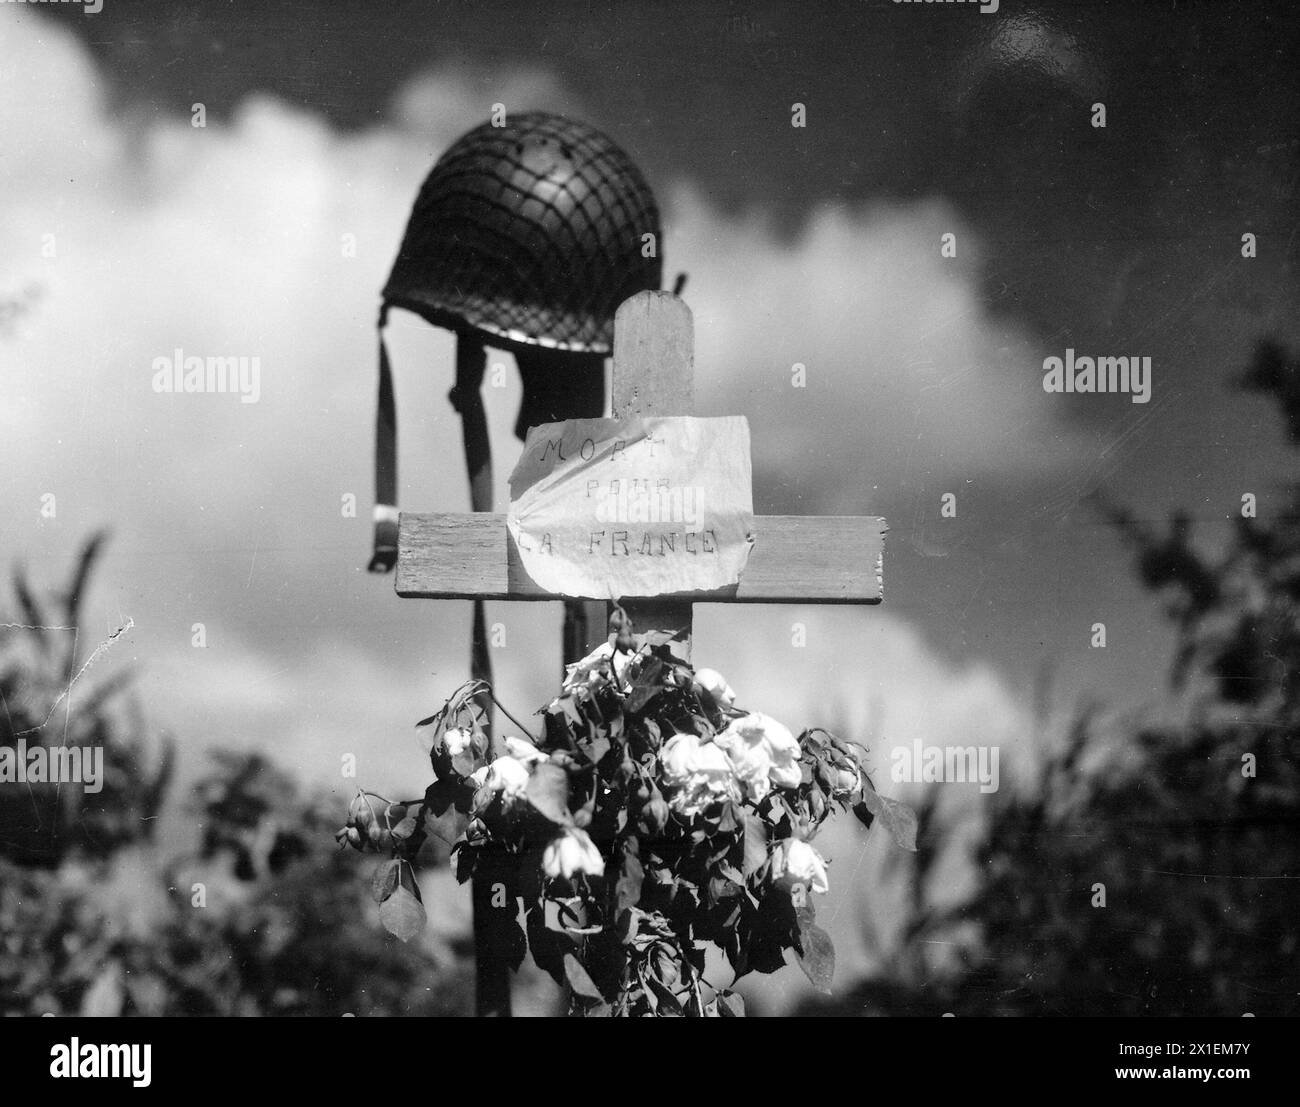 I civili francesi hanno eretto questo silenzioso tributo a un soldato americano caduto nella crociata per liberare la Francia dalla dominazione nazista. Carentan, Francia CA. 1944 Foto Stock